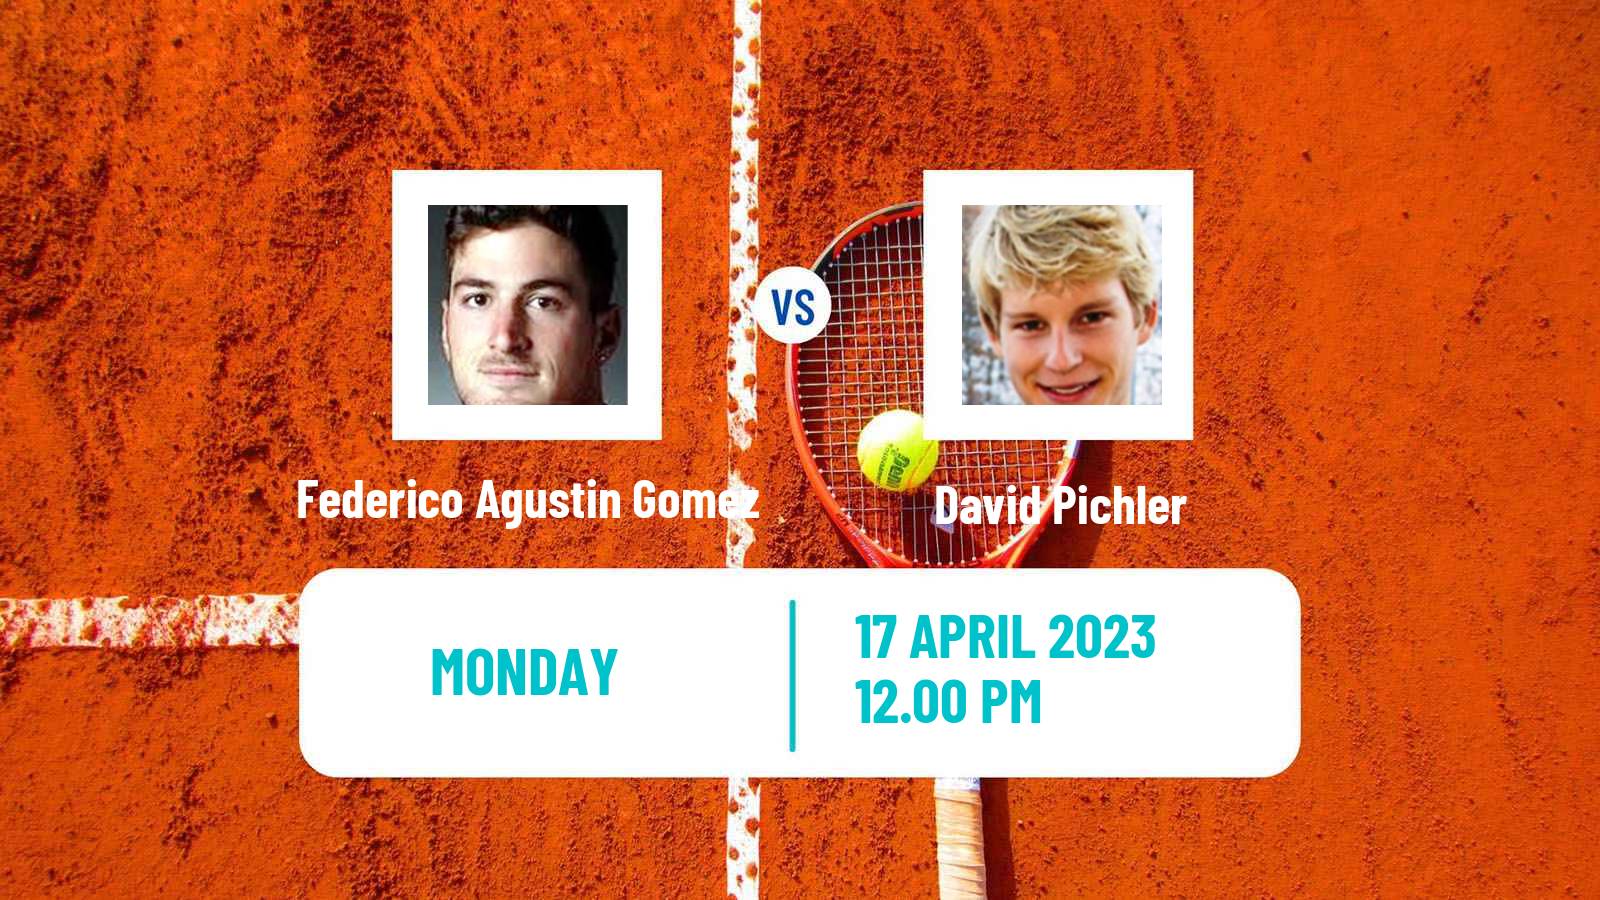 Tennis ATP Challenger Federico Agustin Gomez - David Pichler